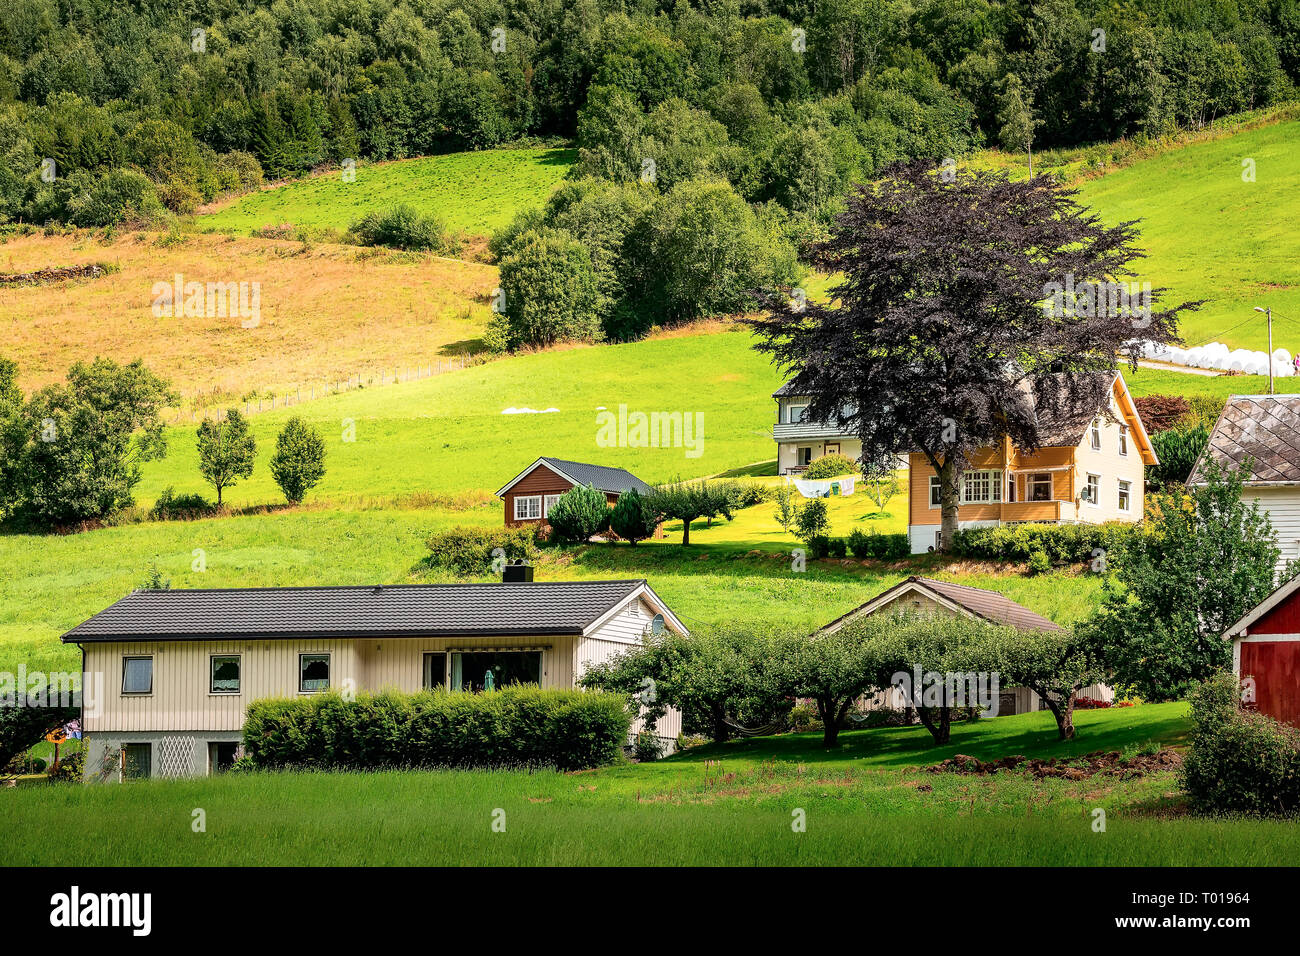 Paysage village norvégien, montagnes et colorés des maisons traditionnelles à Olden, Norvège Banque D'Images